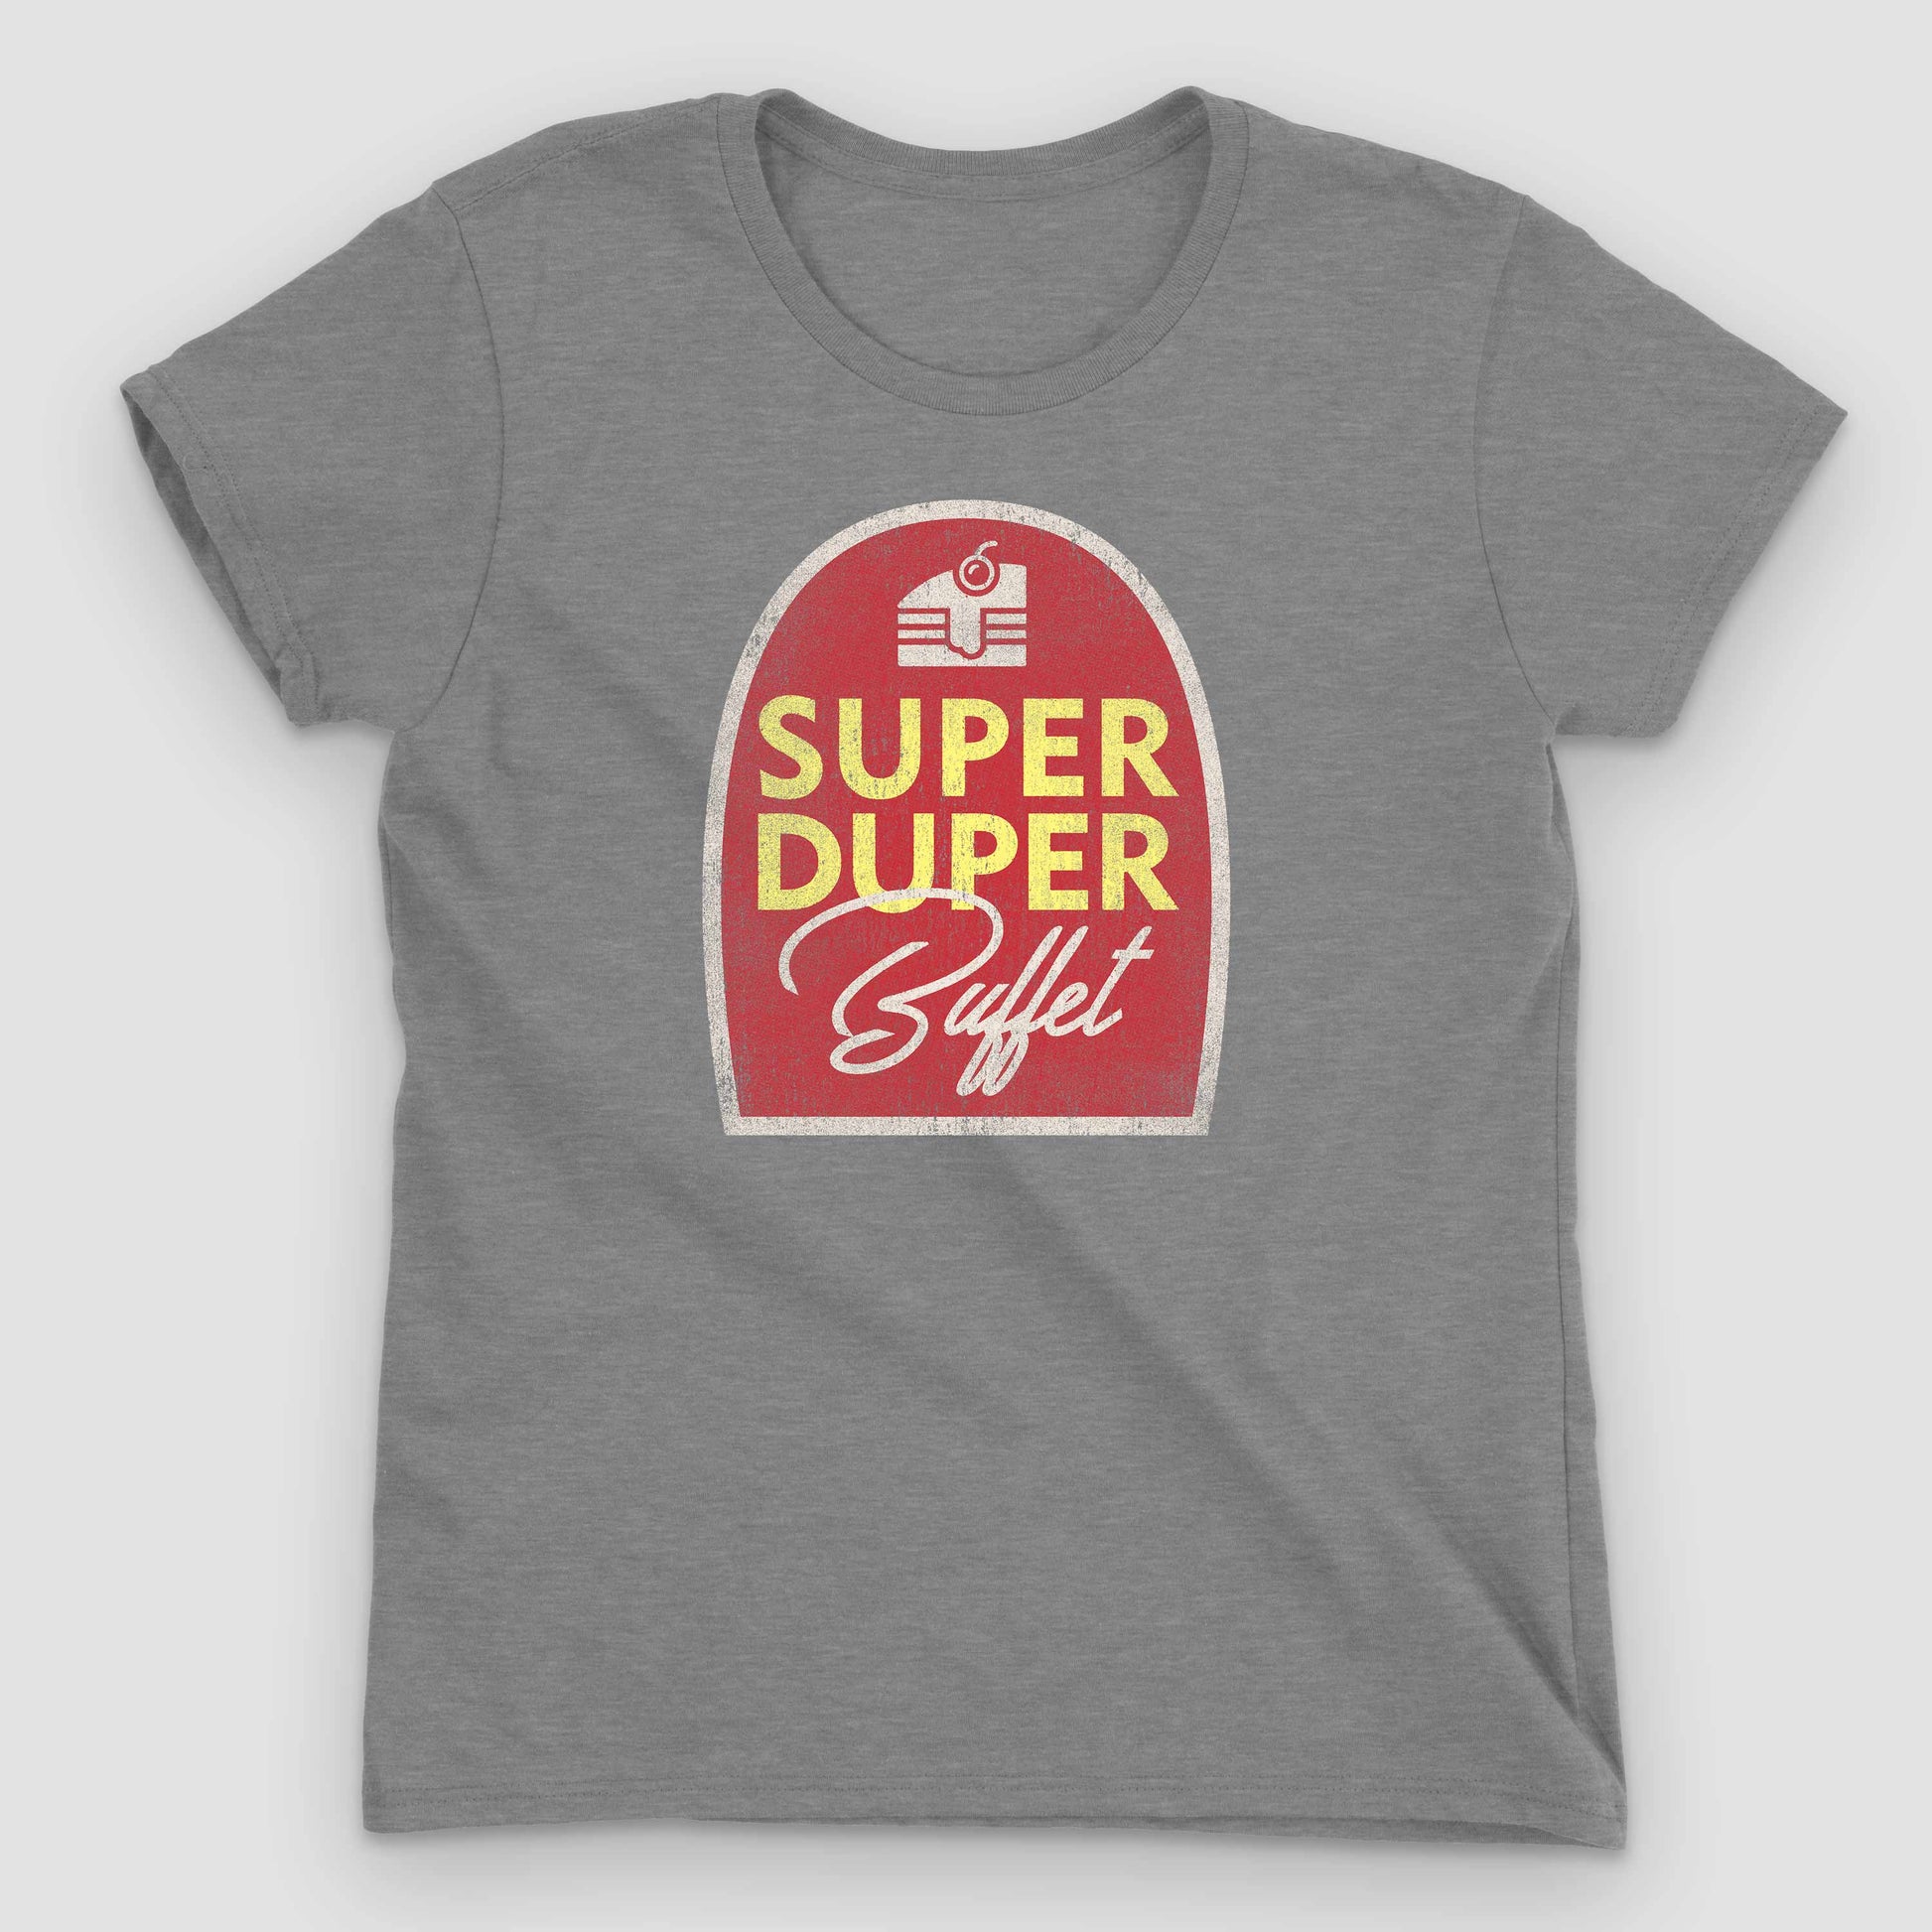 Heather Grey Super Duper Buffet Women's T-Shirt by Snaxtime